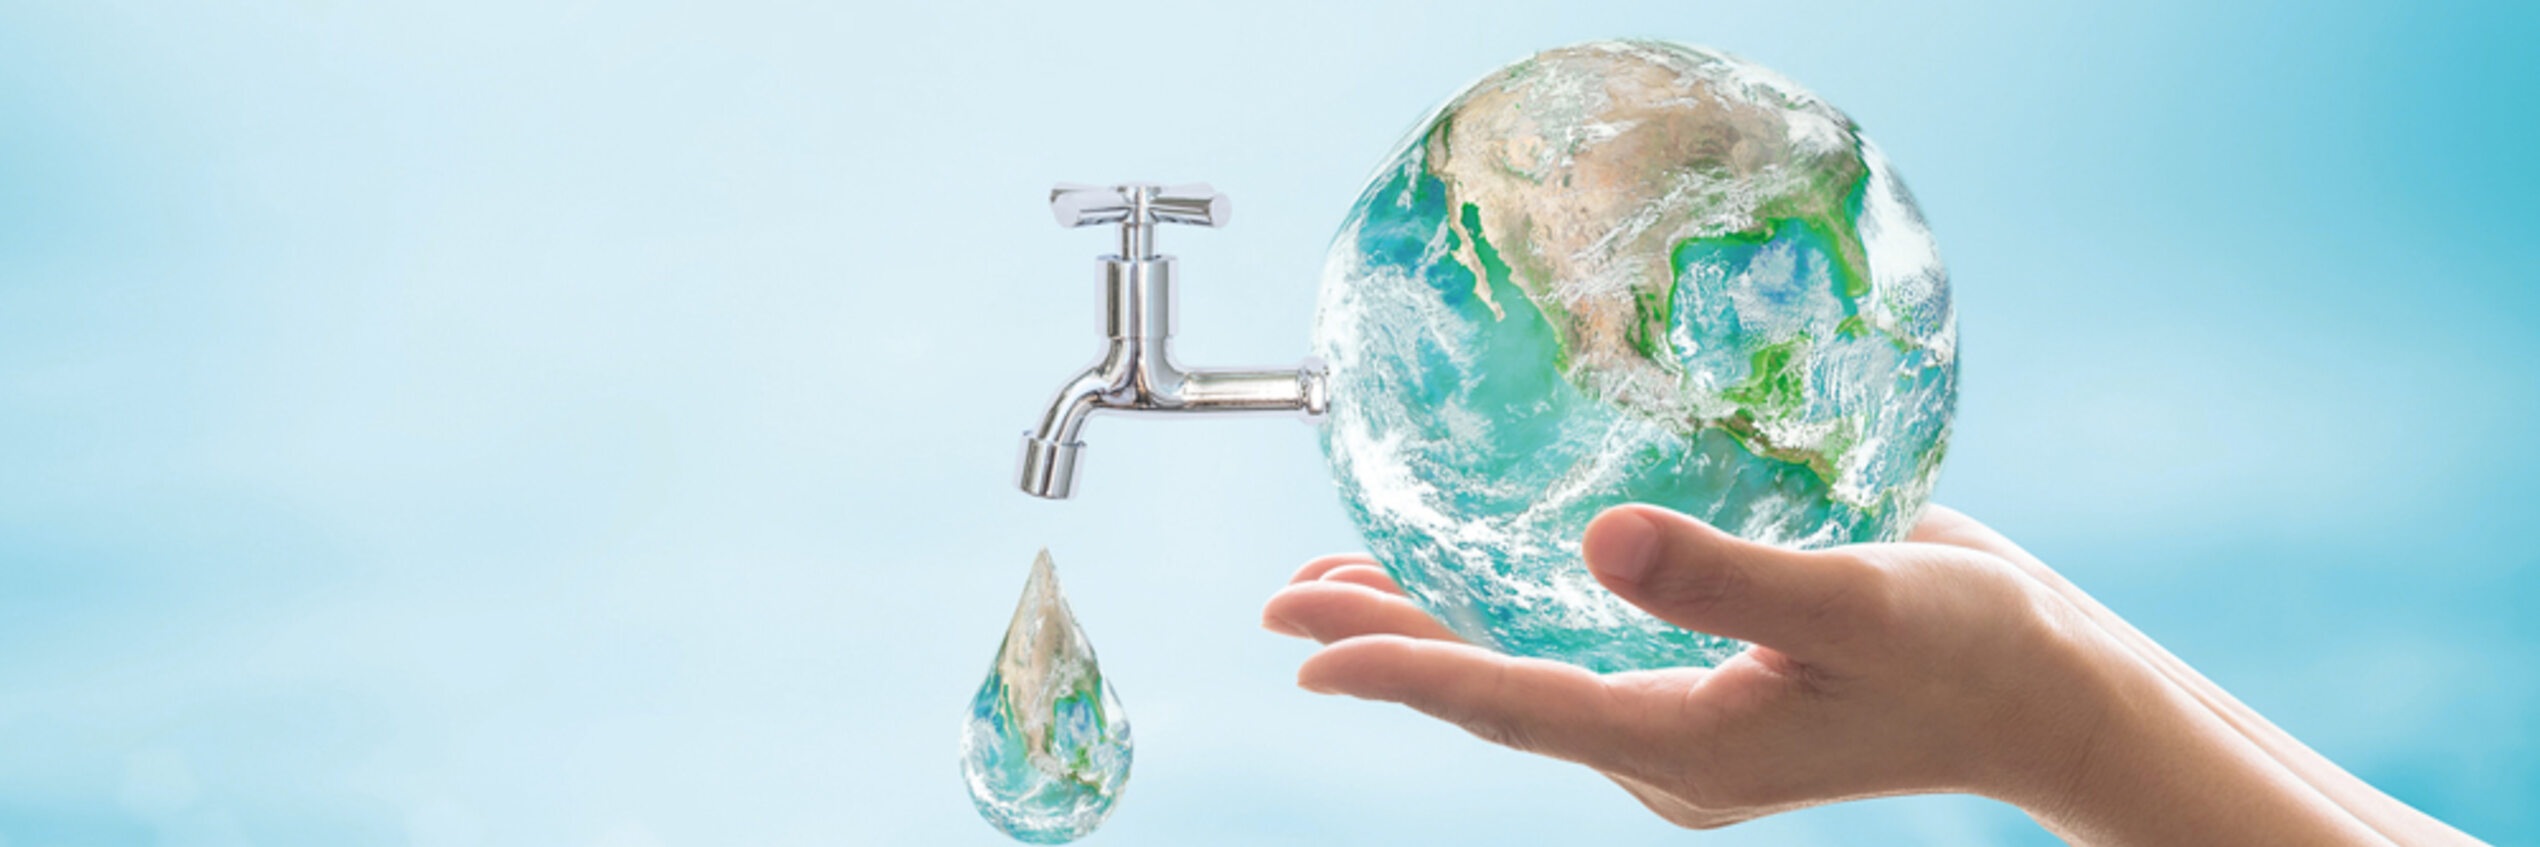 Taux d'eau non facturée dans le monde